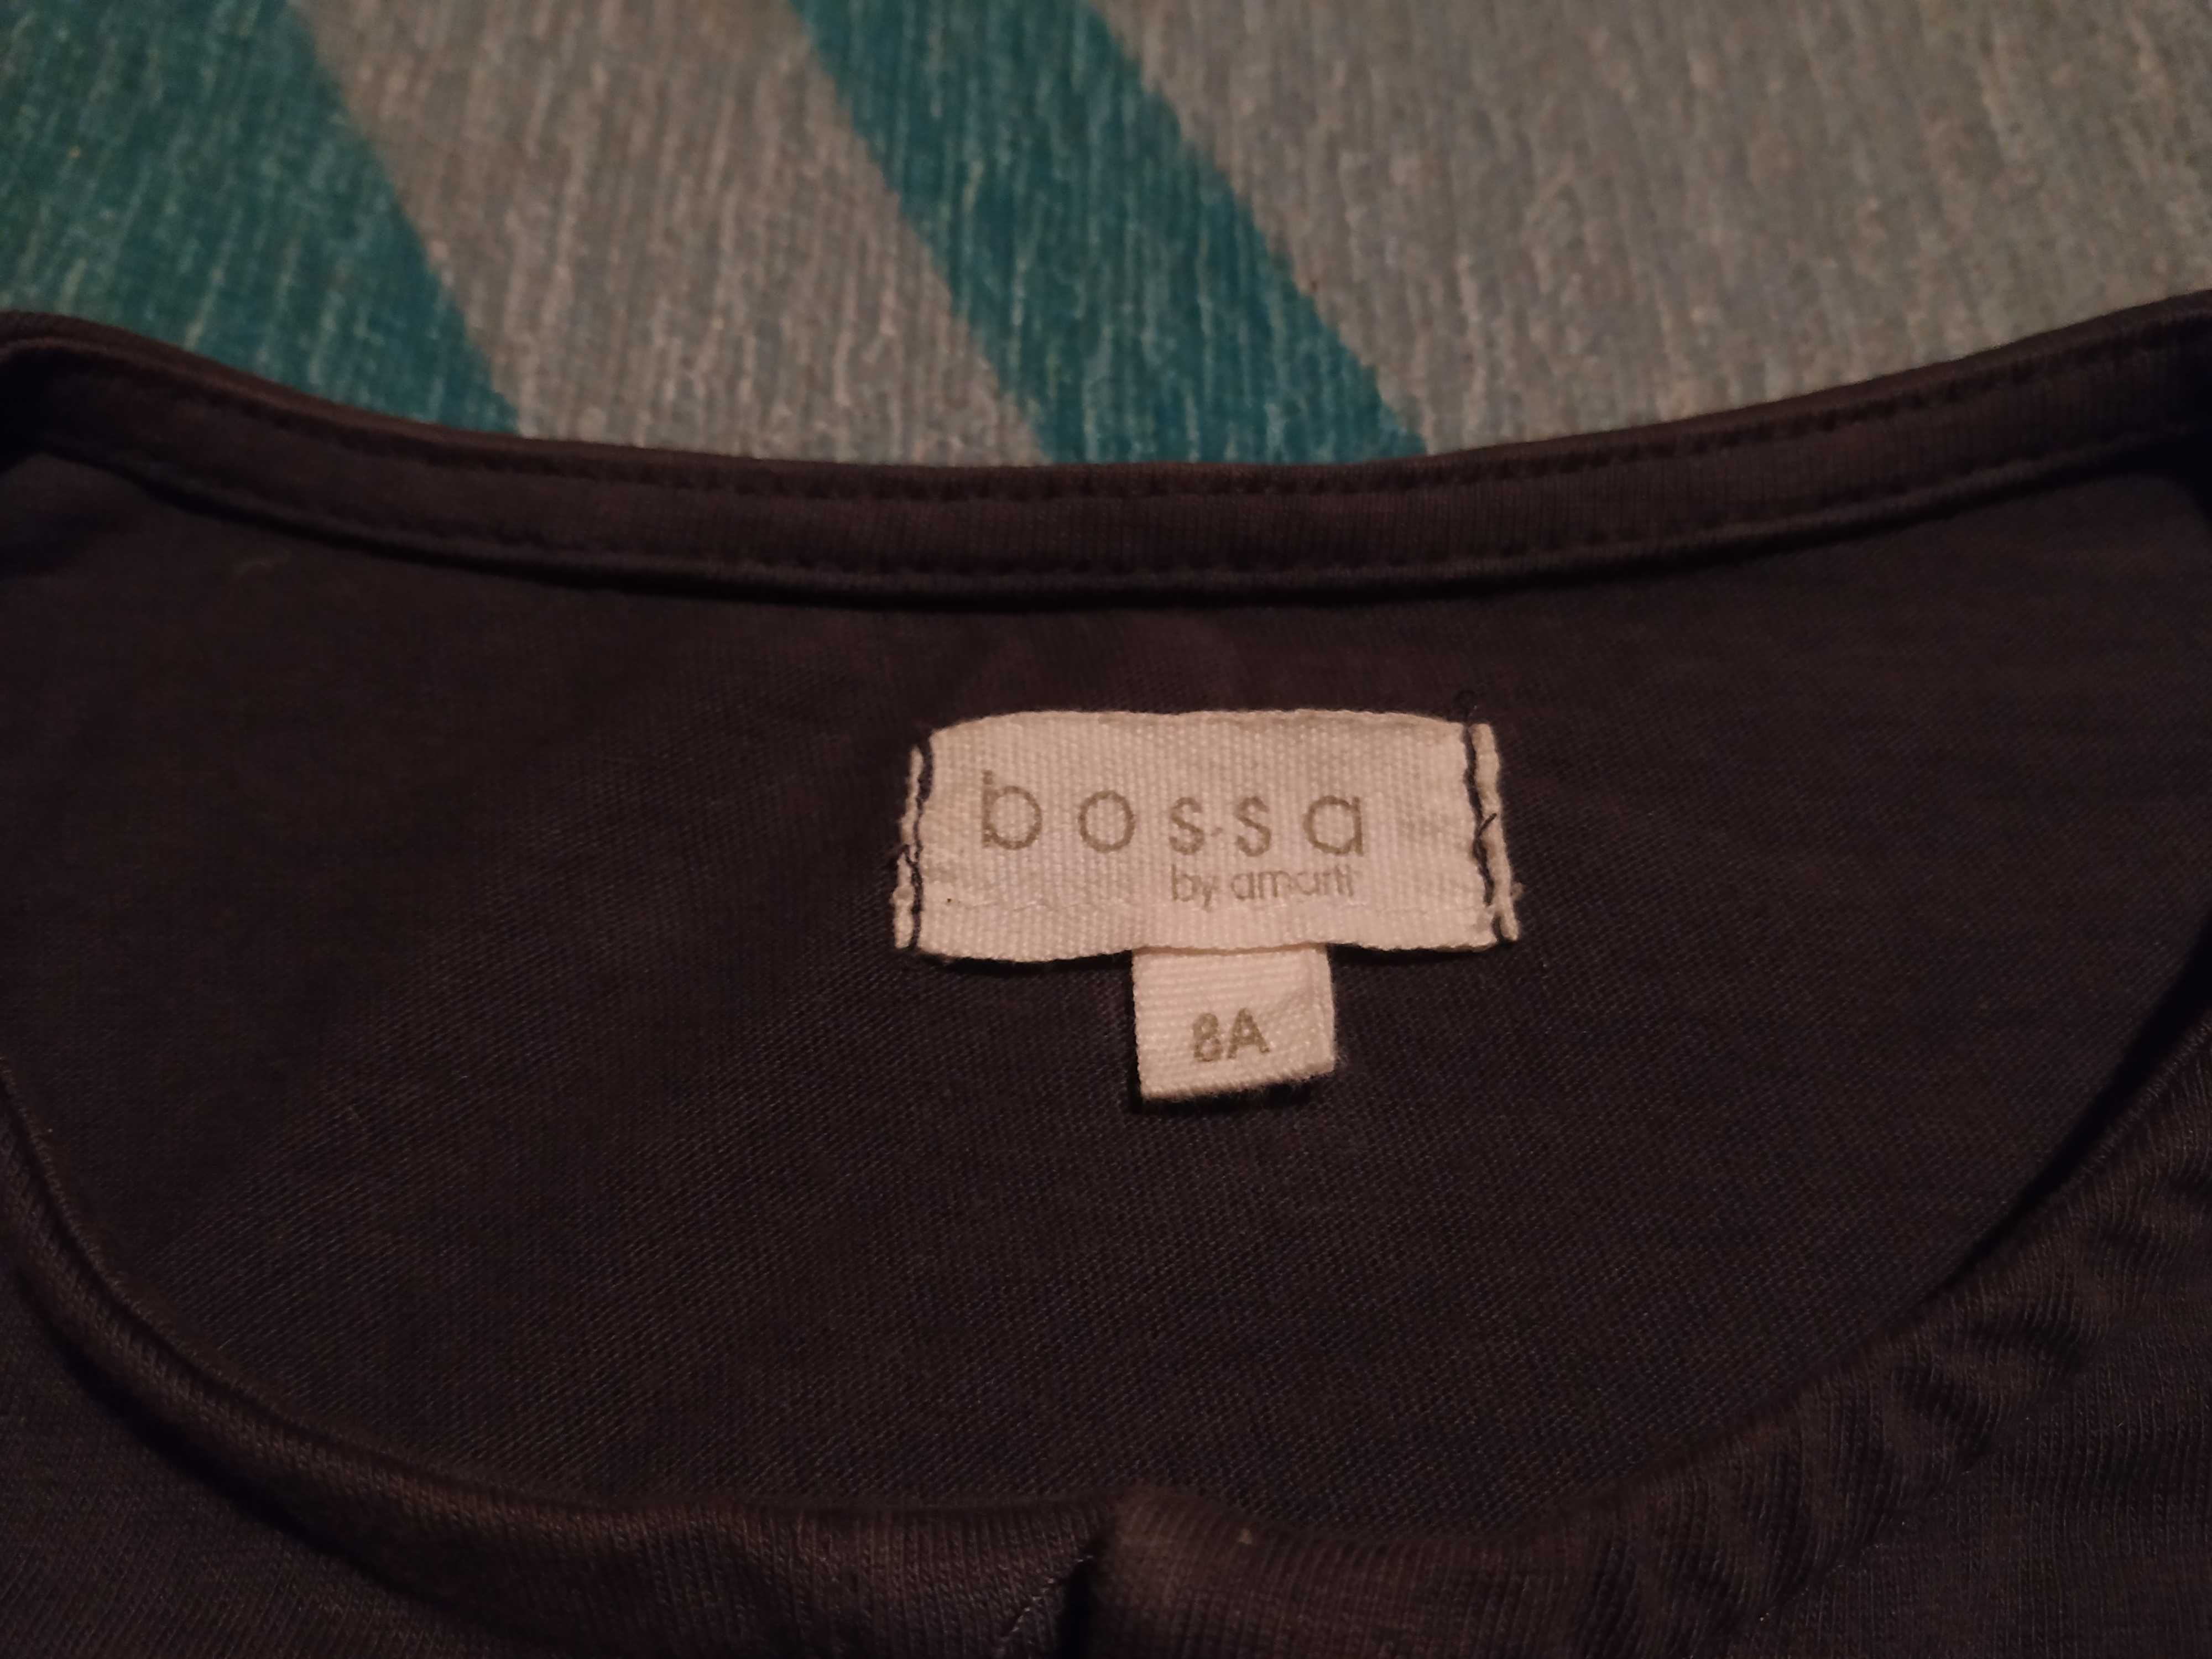 3 camisolas algodão org, marca portuguesa (play up, bossa) - 6 anos